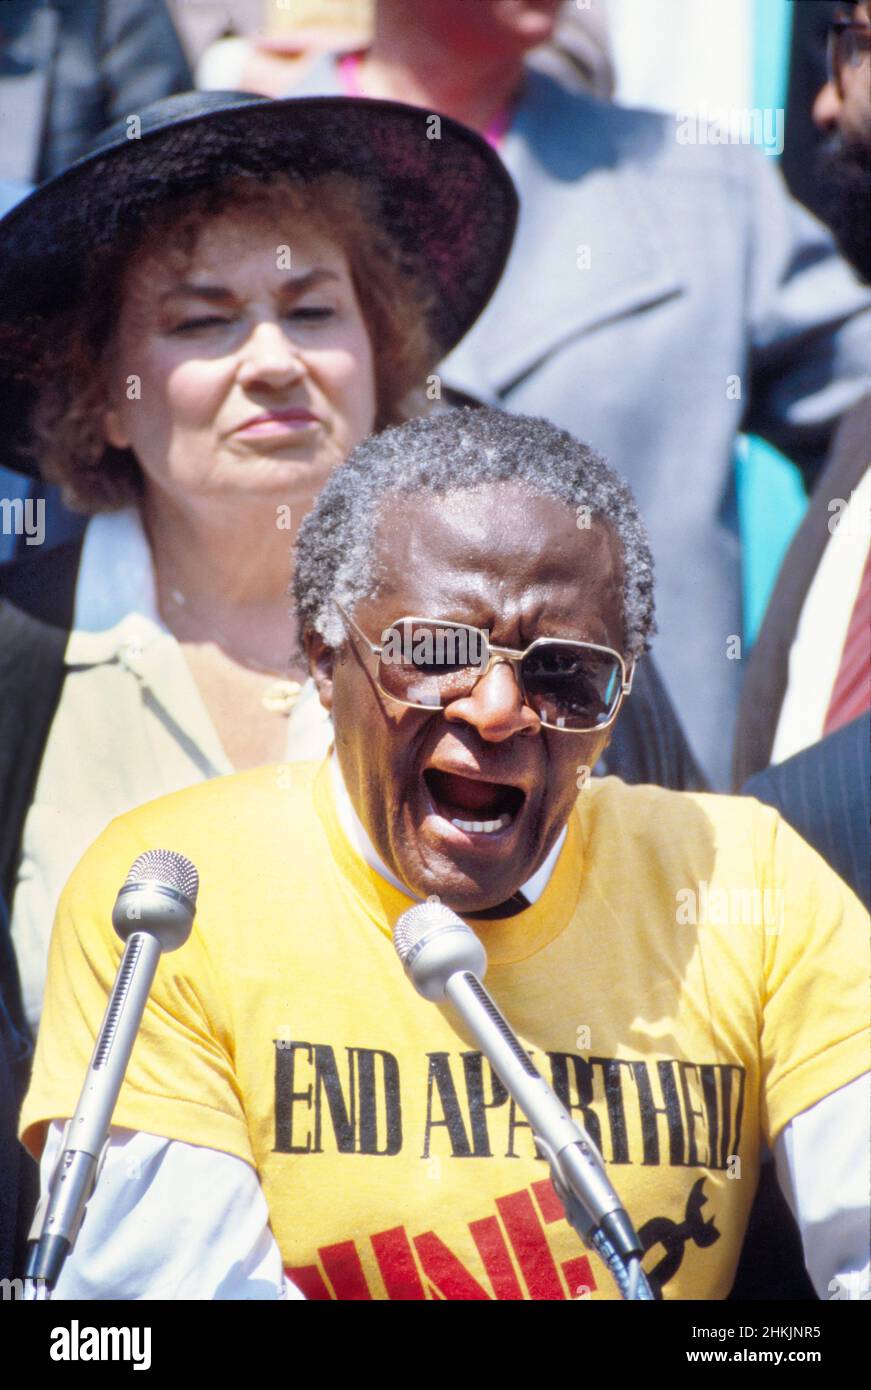 Desmond Tutu (1931-2021), évêque sud-africain et théologien, militant contre l'apartheid et les droits de l'homme, s'exprimant en mars contre le rassemblement contre l'apartheid, New York City, New York, Etats-Unis, Bernard Gotfryd,14 juin 1986 Banque D'Images